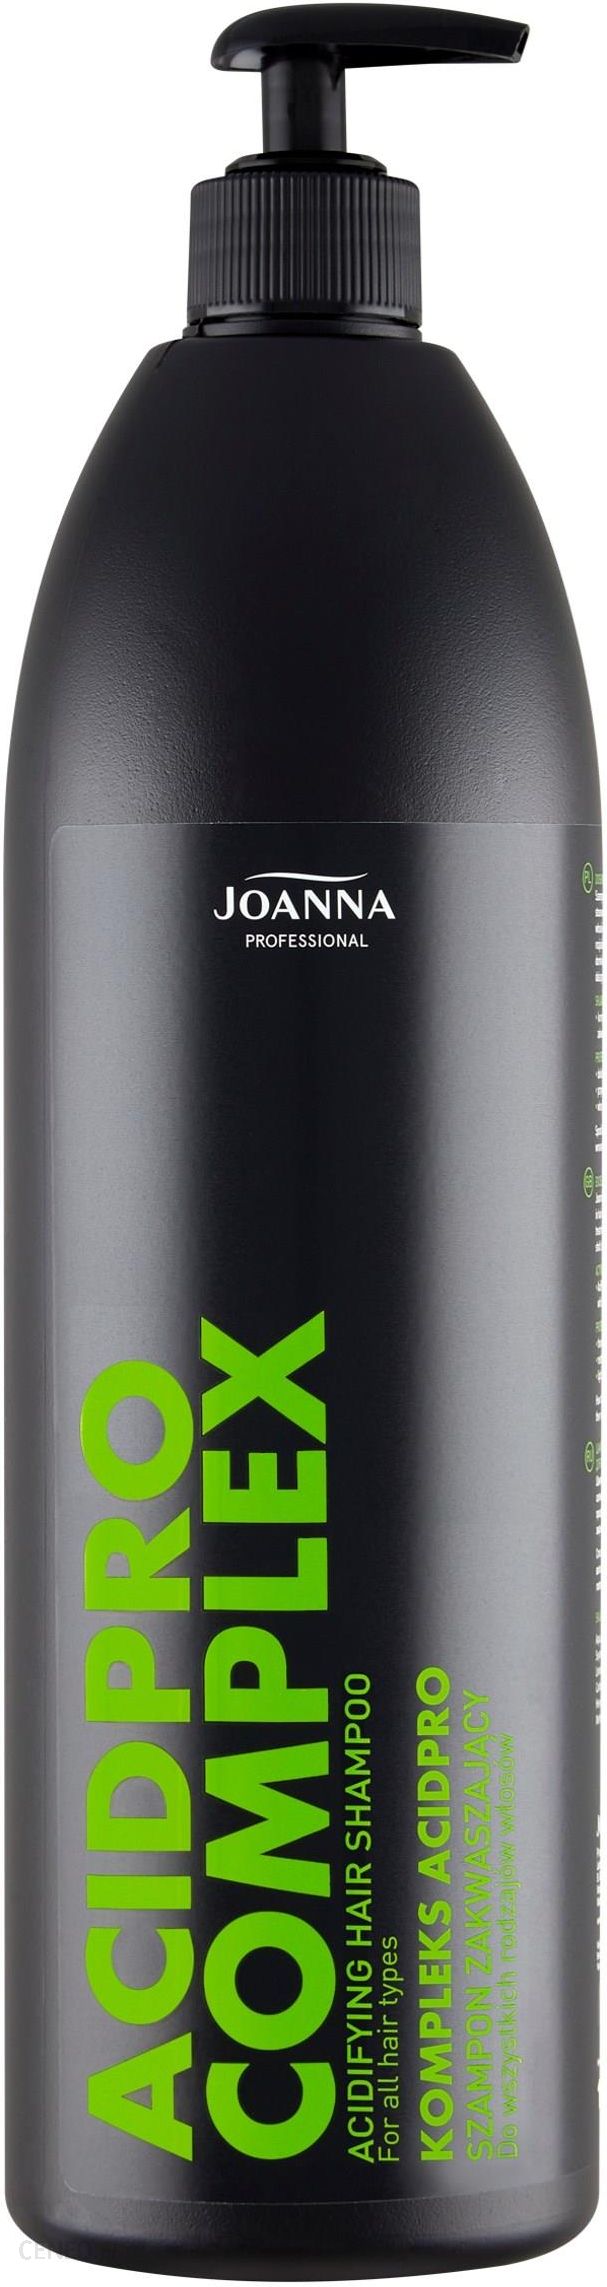 joanna professional szampon zakwaszający opinie